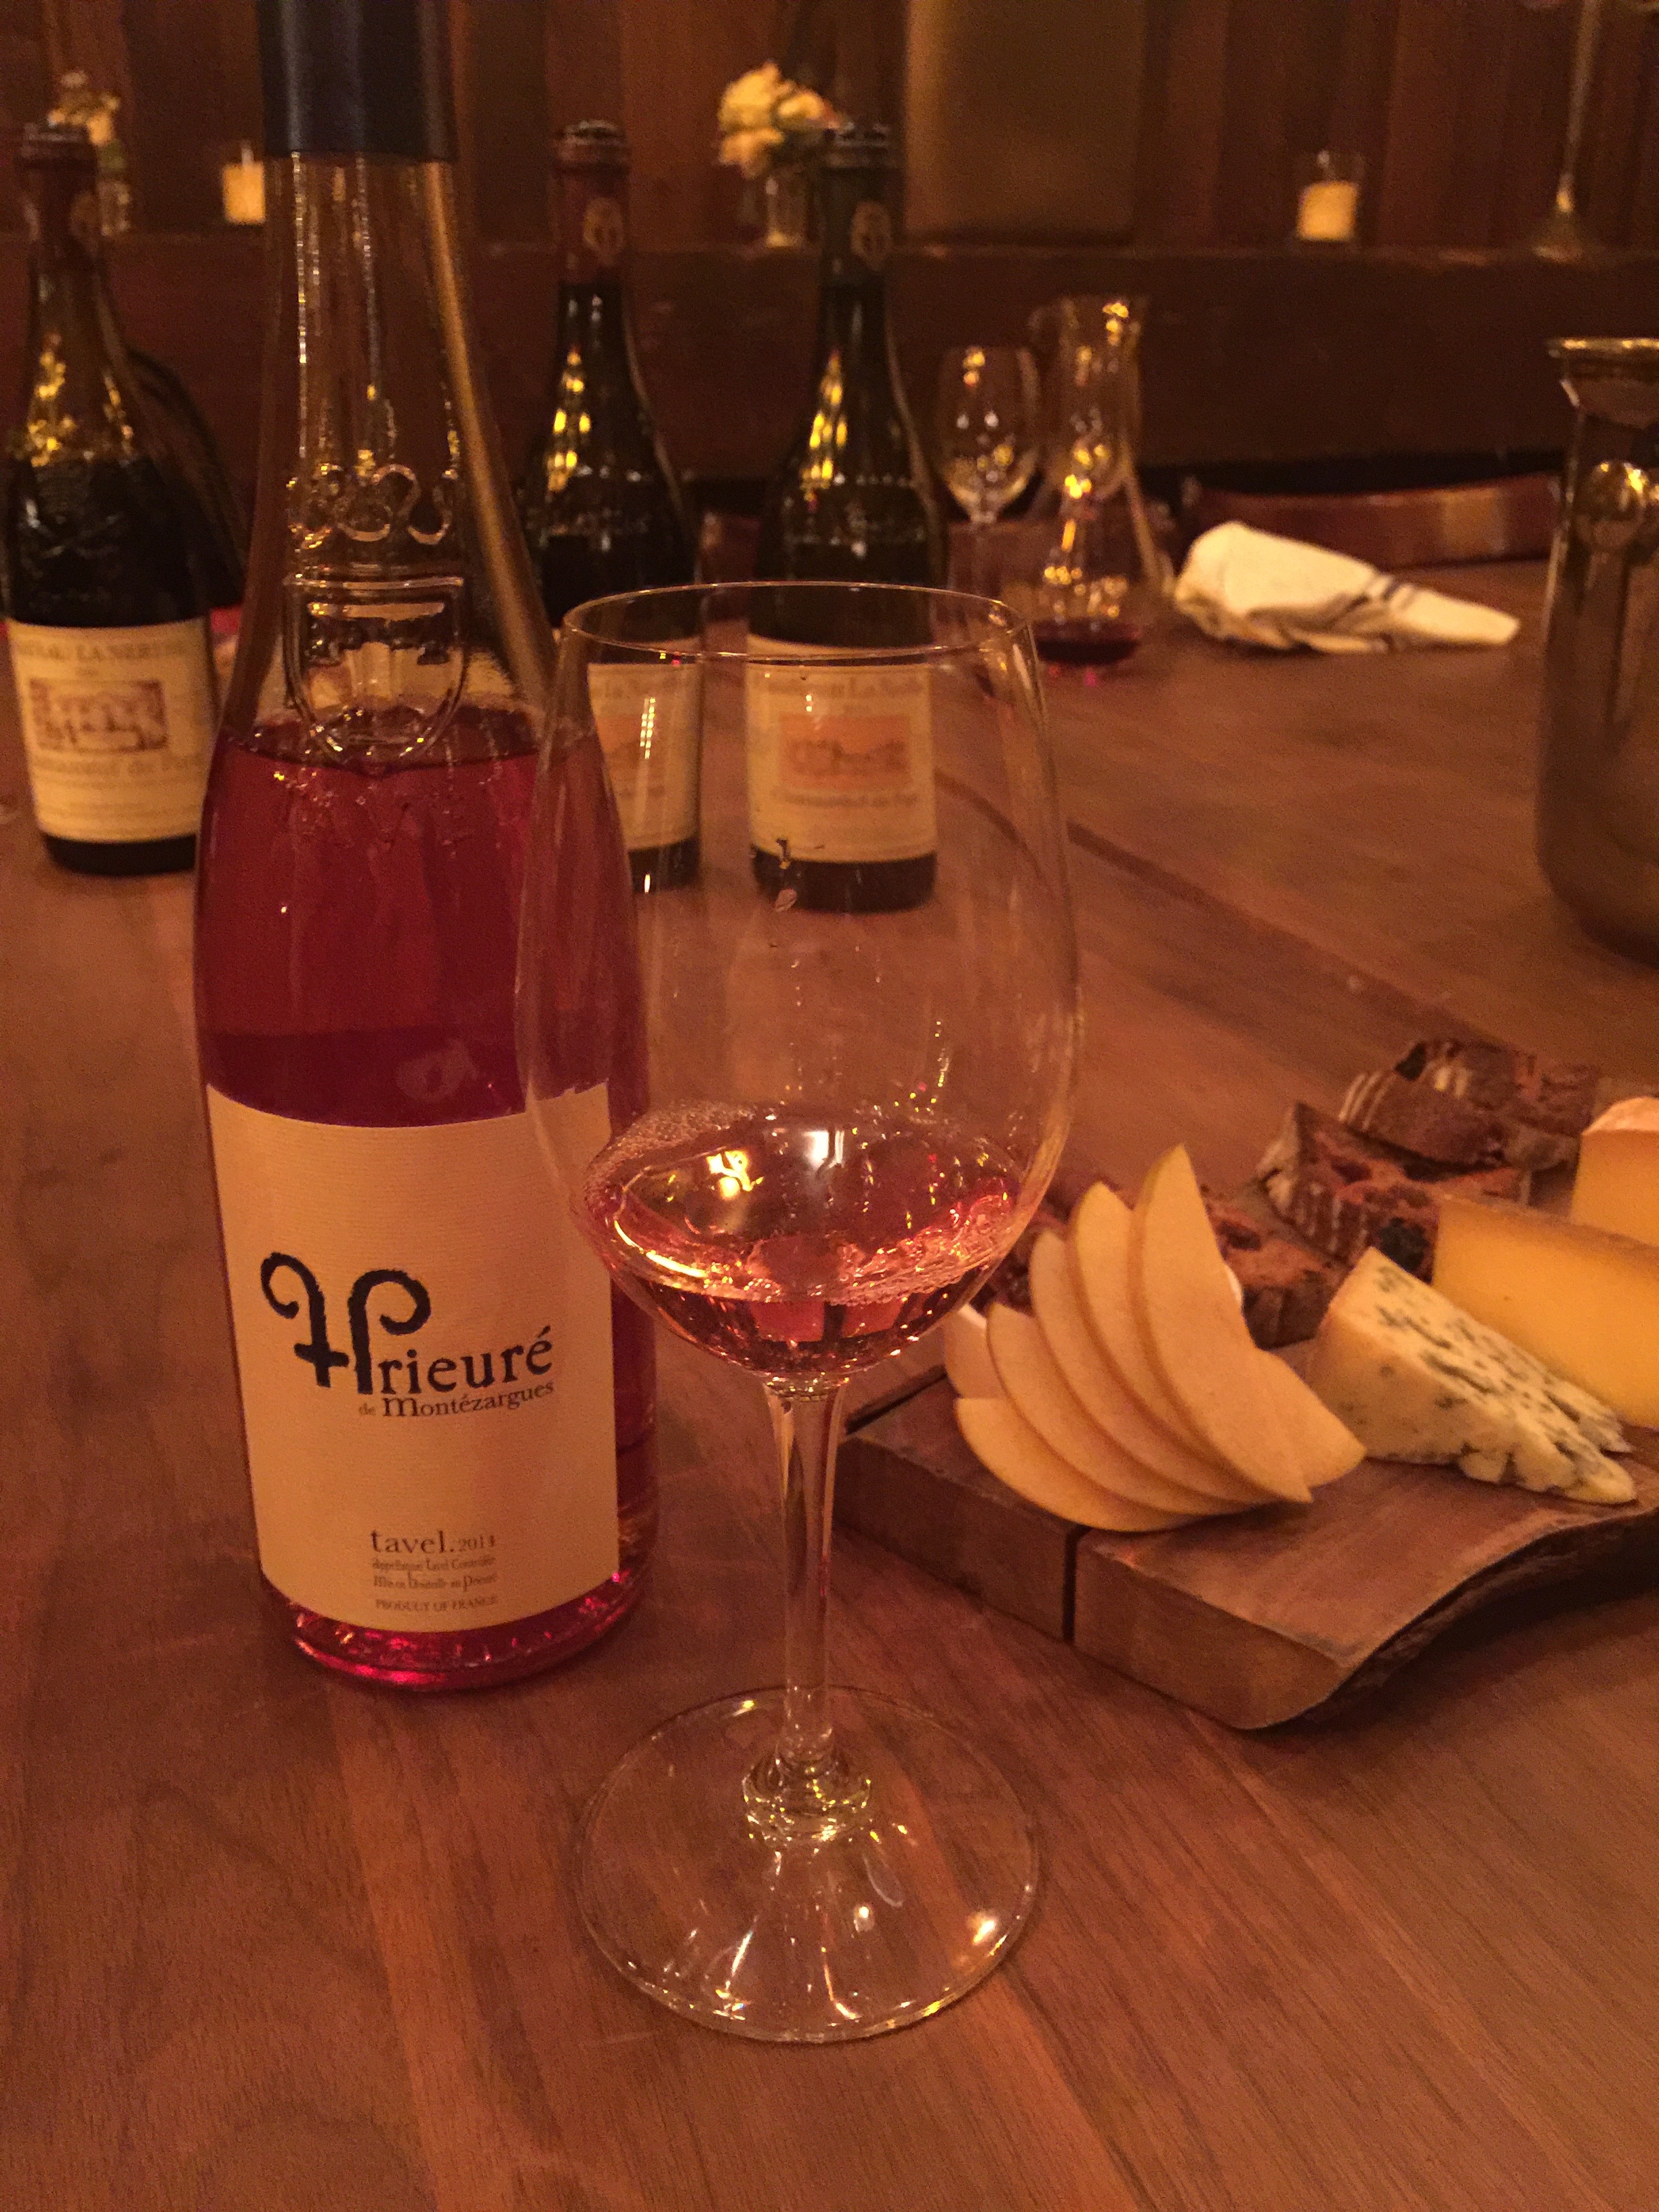 Prieuré de Montézargues Tavel Rosé–The perfect pink wine for Valentine’s Day